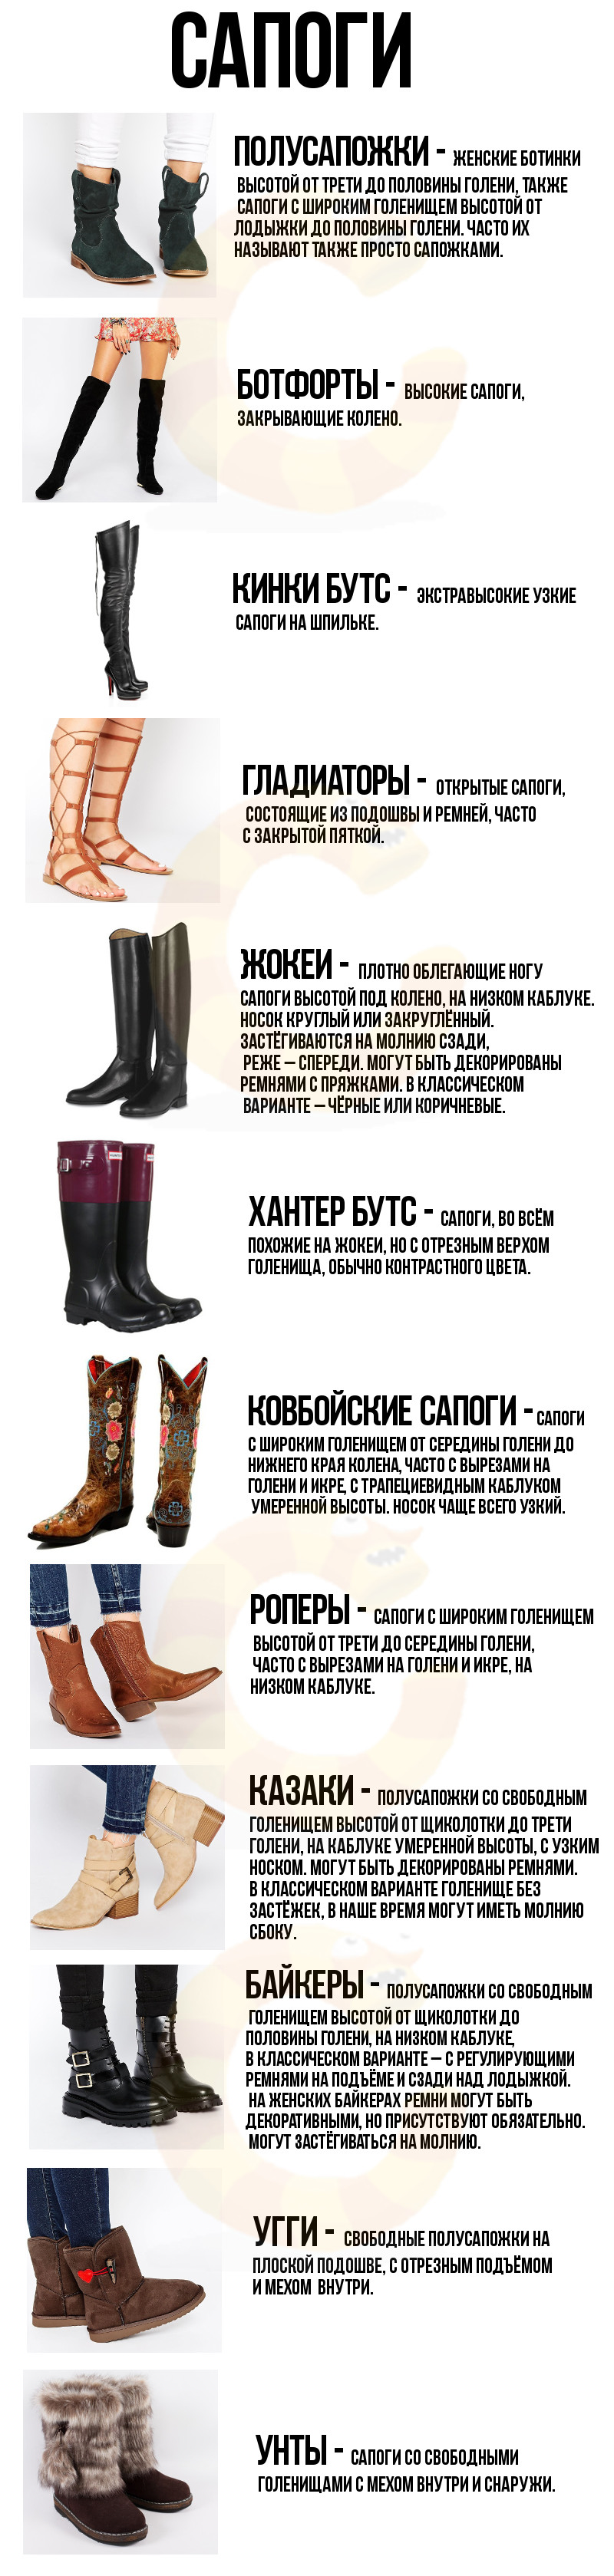 Название мужской обуви с картинками на русском языке